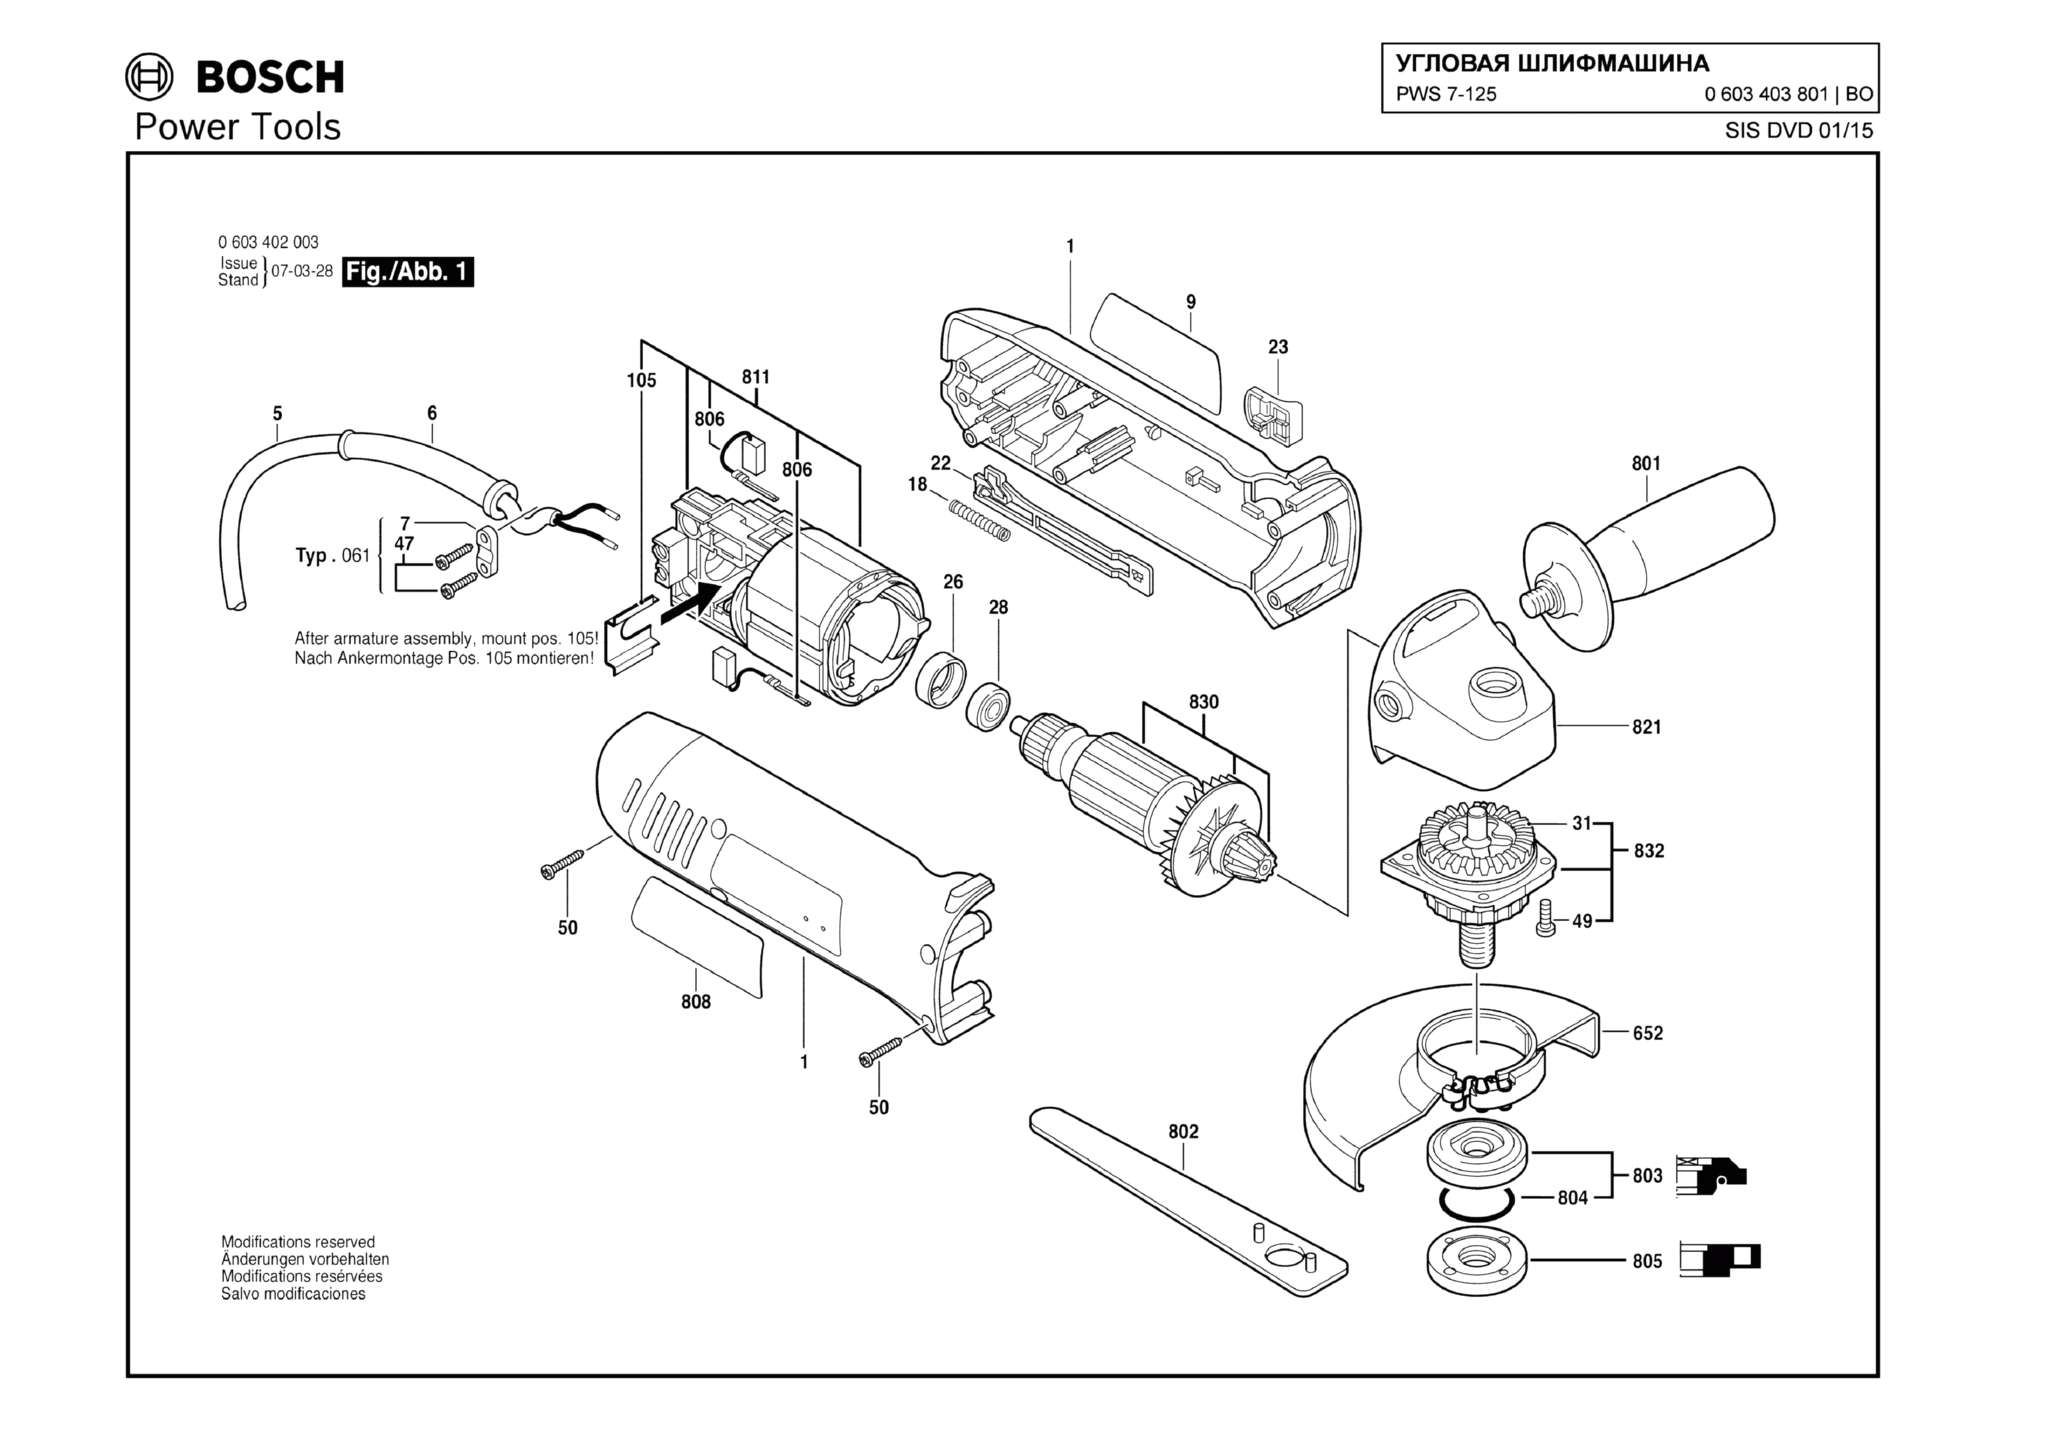 Запчасти, схема и деталировка Bosch PWS 7-125 (ТИП 0603403801)